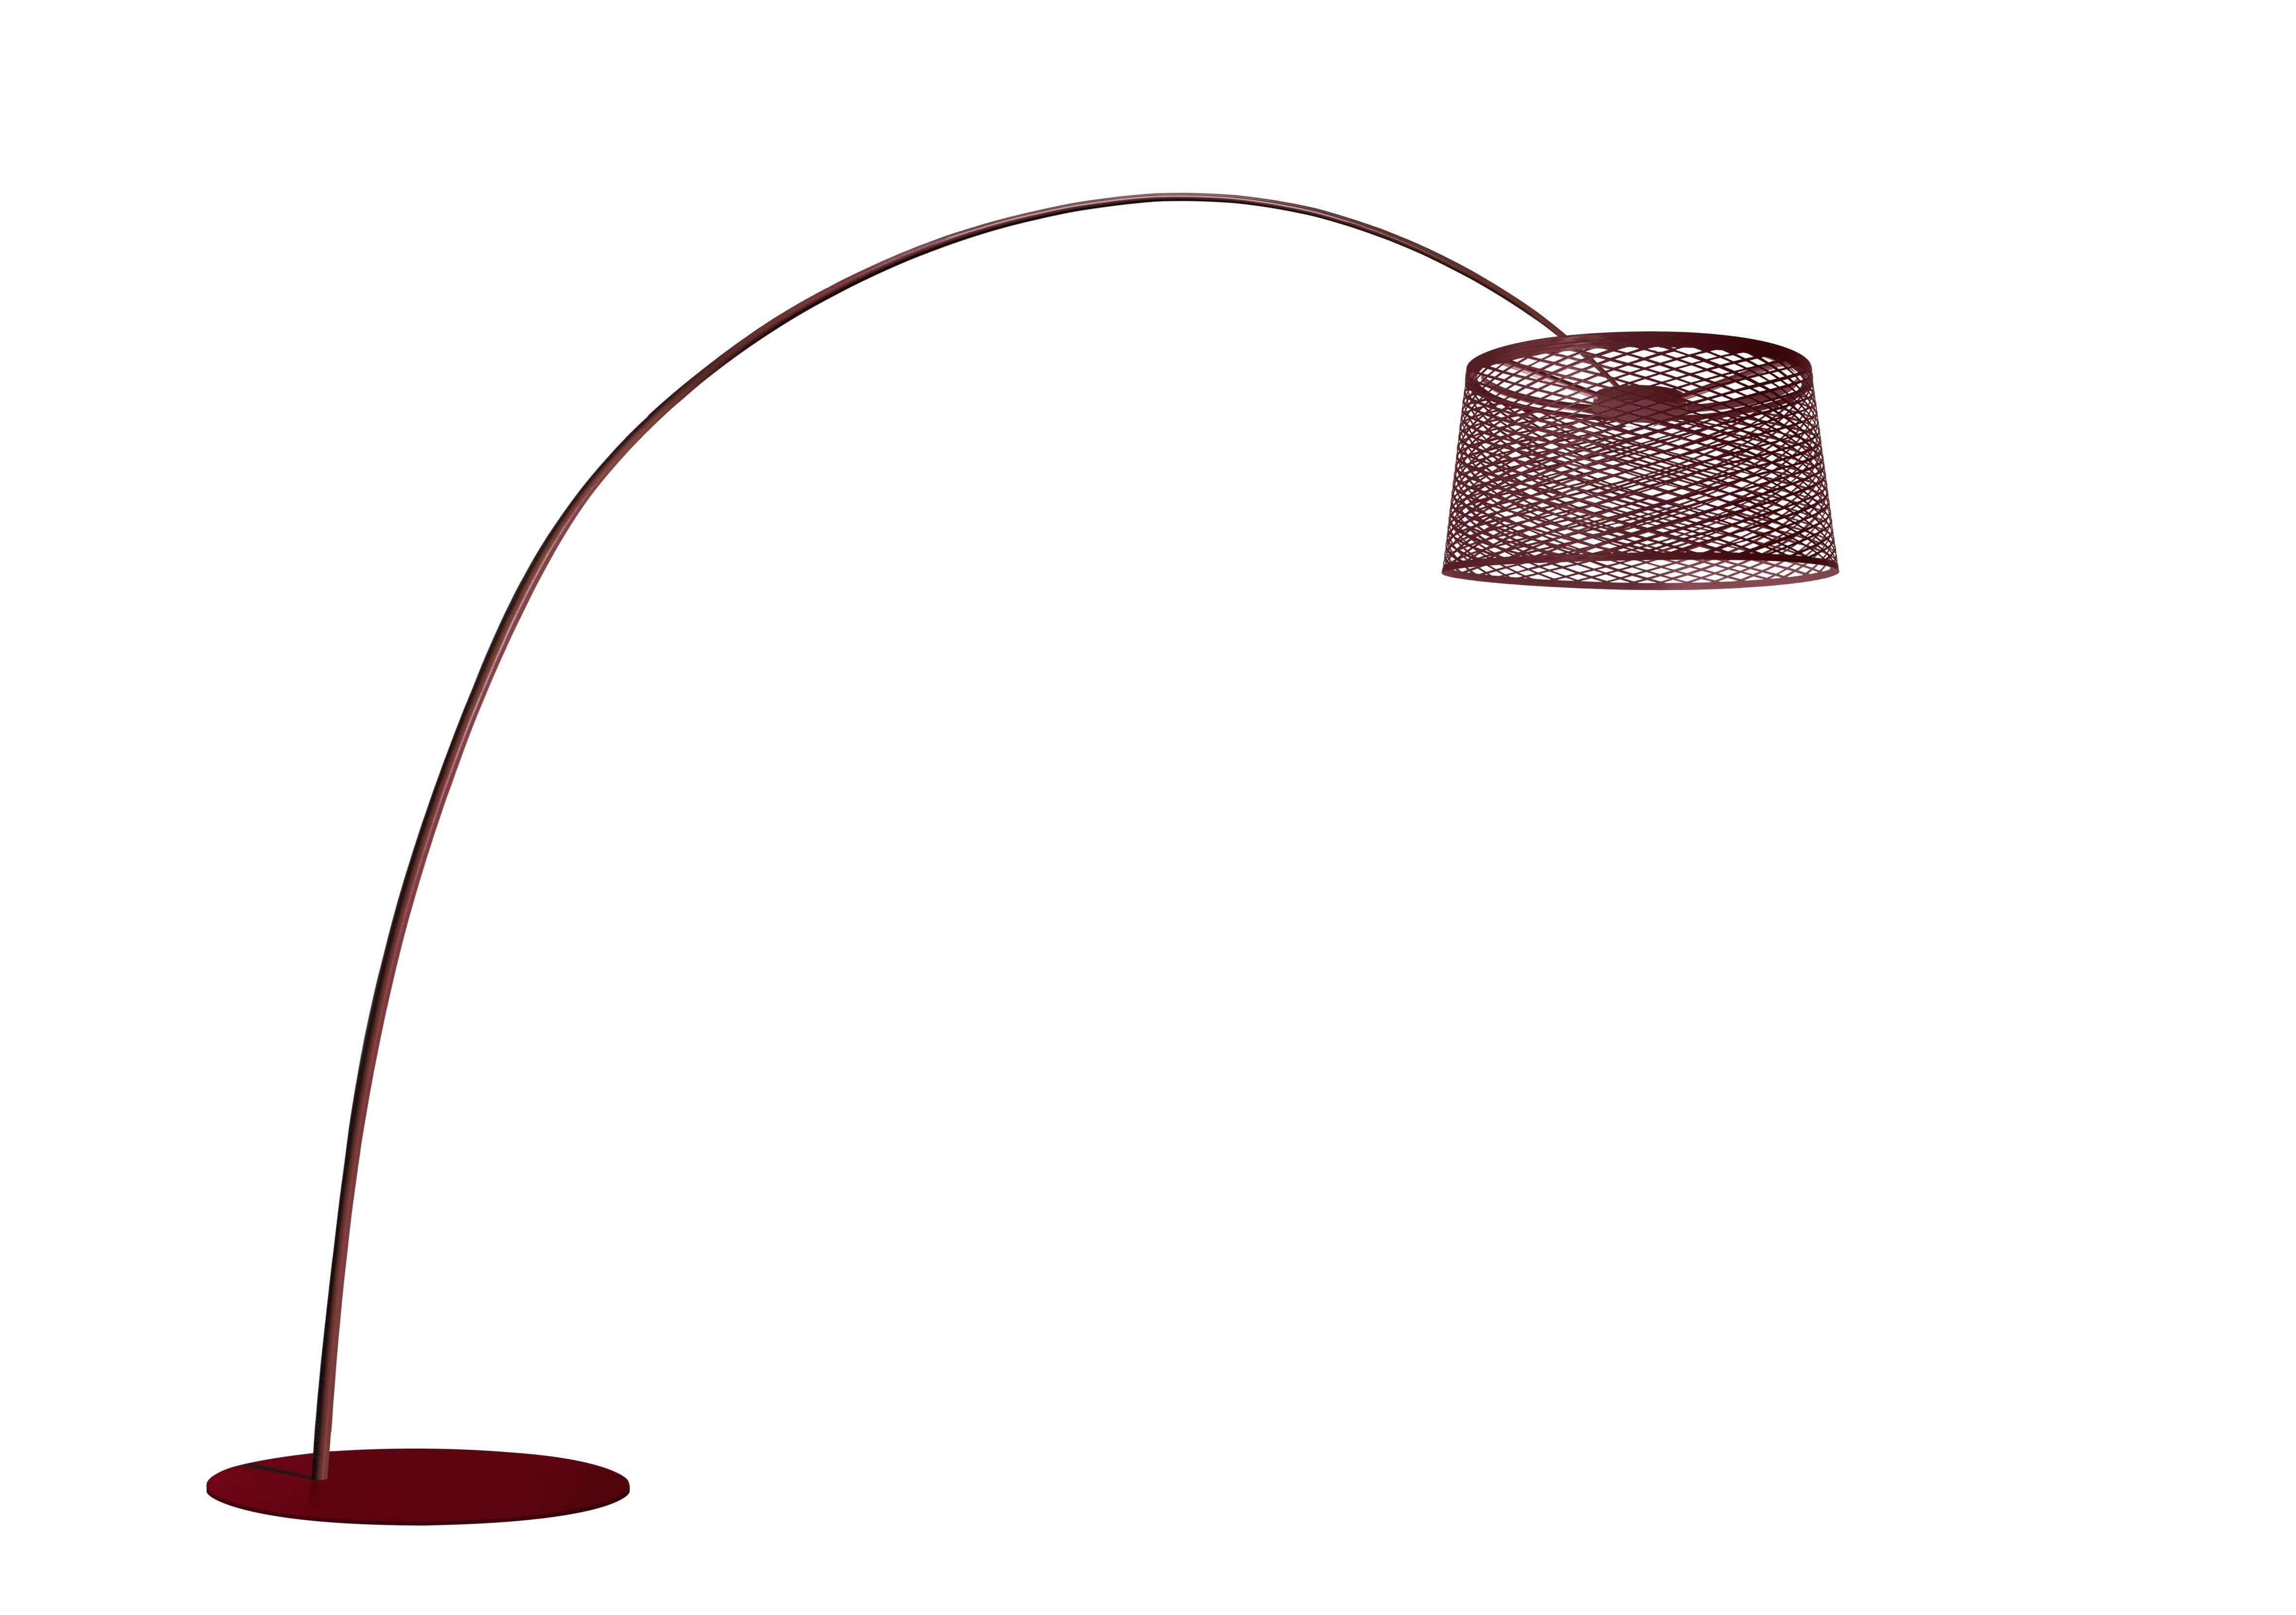 Foscarini Twice as Twiggy lamp